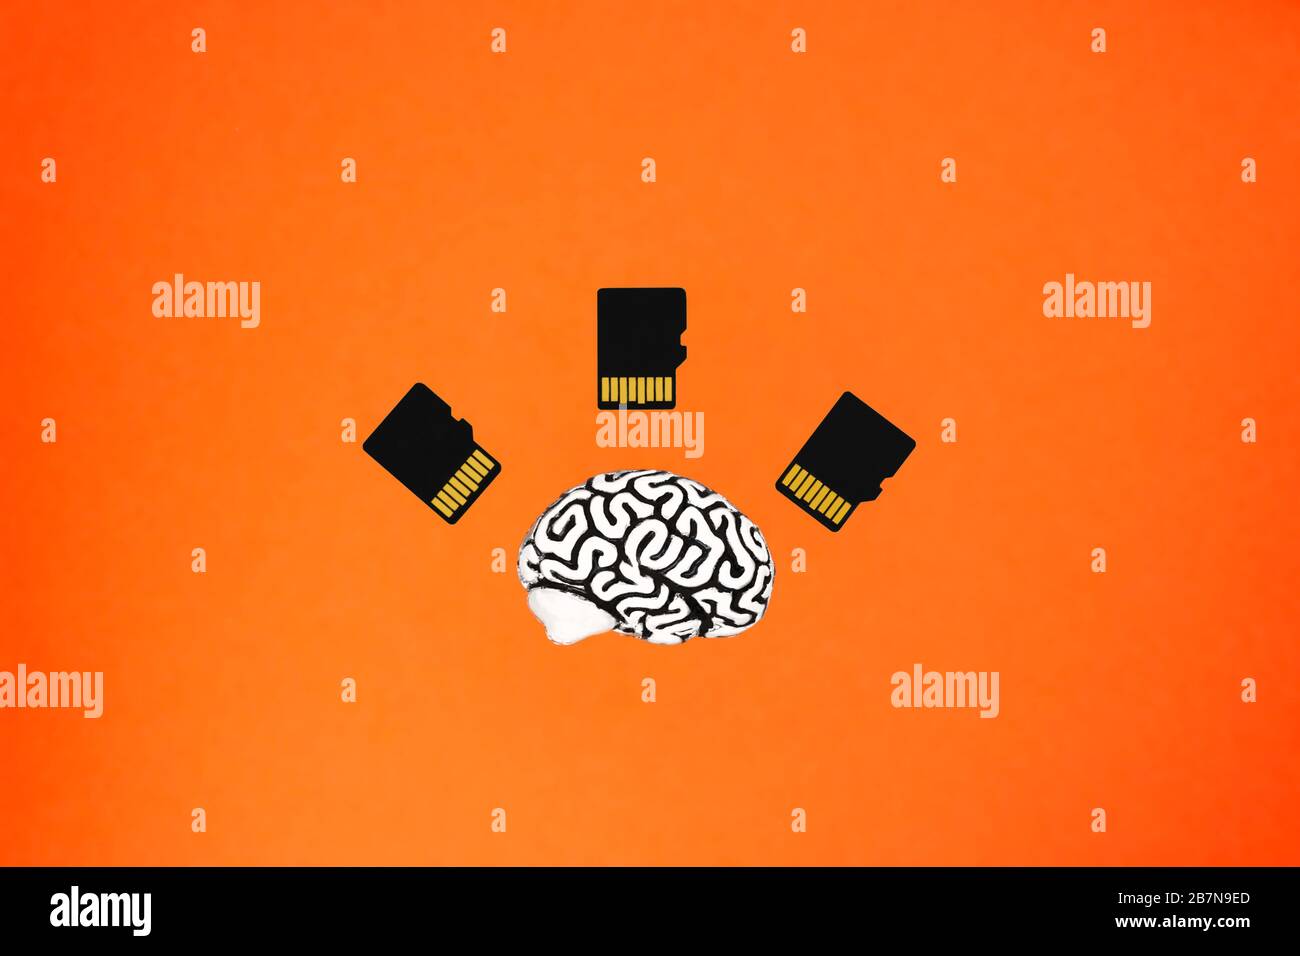 Un piccolo modello di cervello umano e tre schede di memoria che giacciono su uno sfondo arancione. Vista frontale dall'alto. Concetto di intelligenza artificiale. Foto Stock